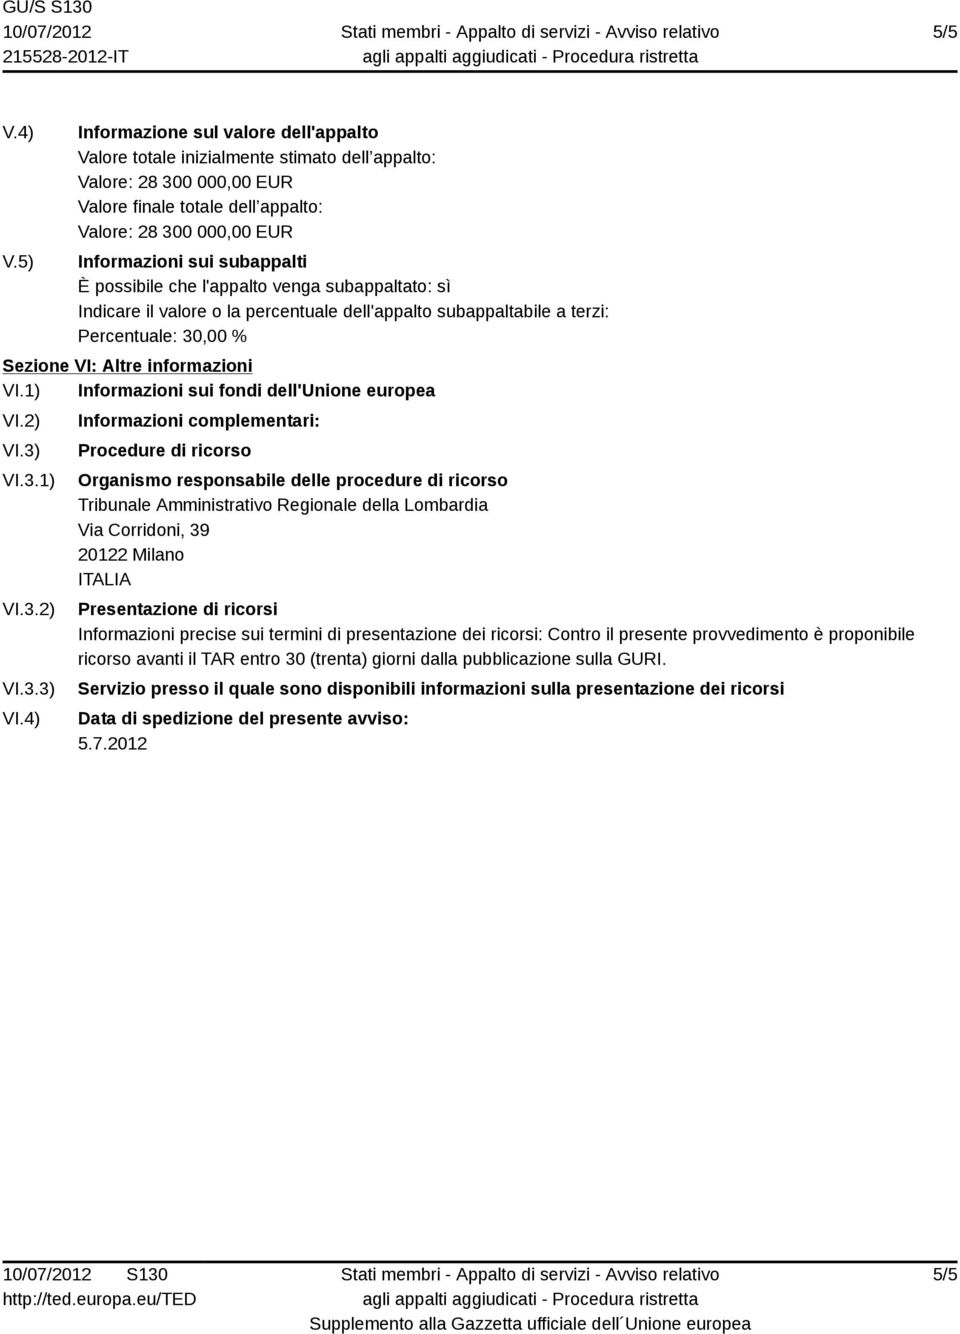 4) Informazioni complementari: Procedure di ricorso Organismo responsabile delle procedure di ricorso Tribunale Amministrativo Regionale della Lombardia Via Corridoni, 39 20122